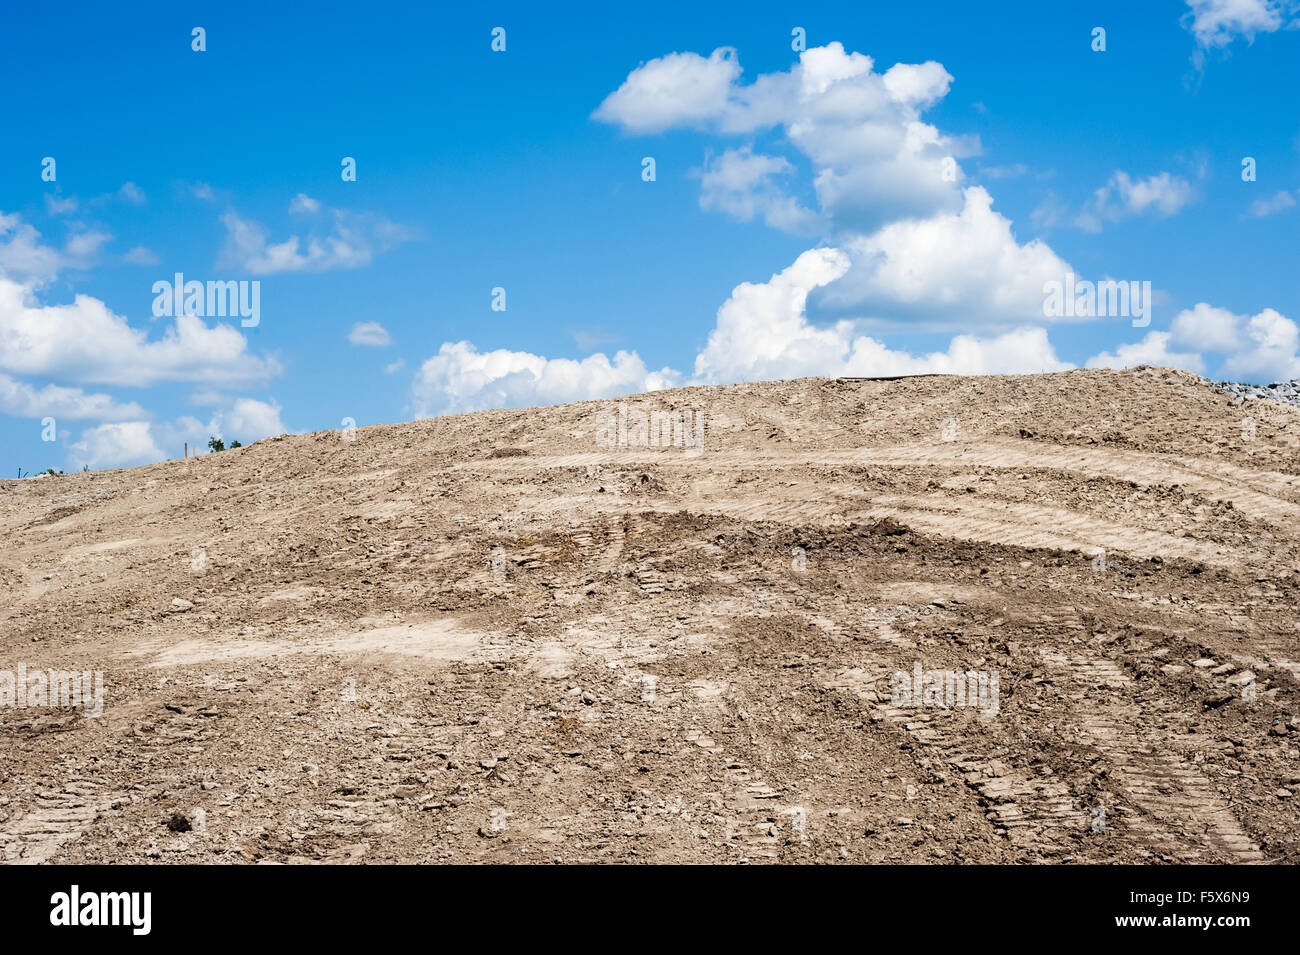 Sandy tumulo sporco con pneumatici e cingoli, terminante in corrispondenza del cielo blu con nuvole cumulus. Foto Stock